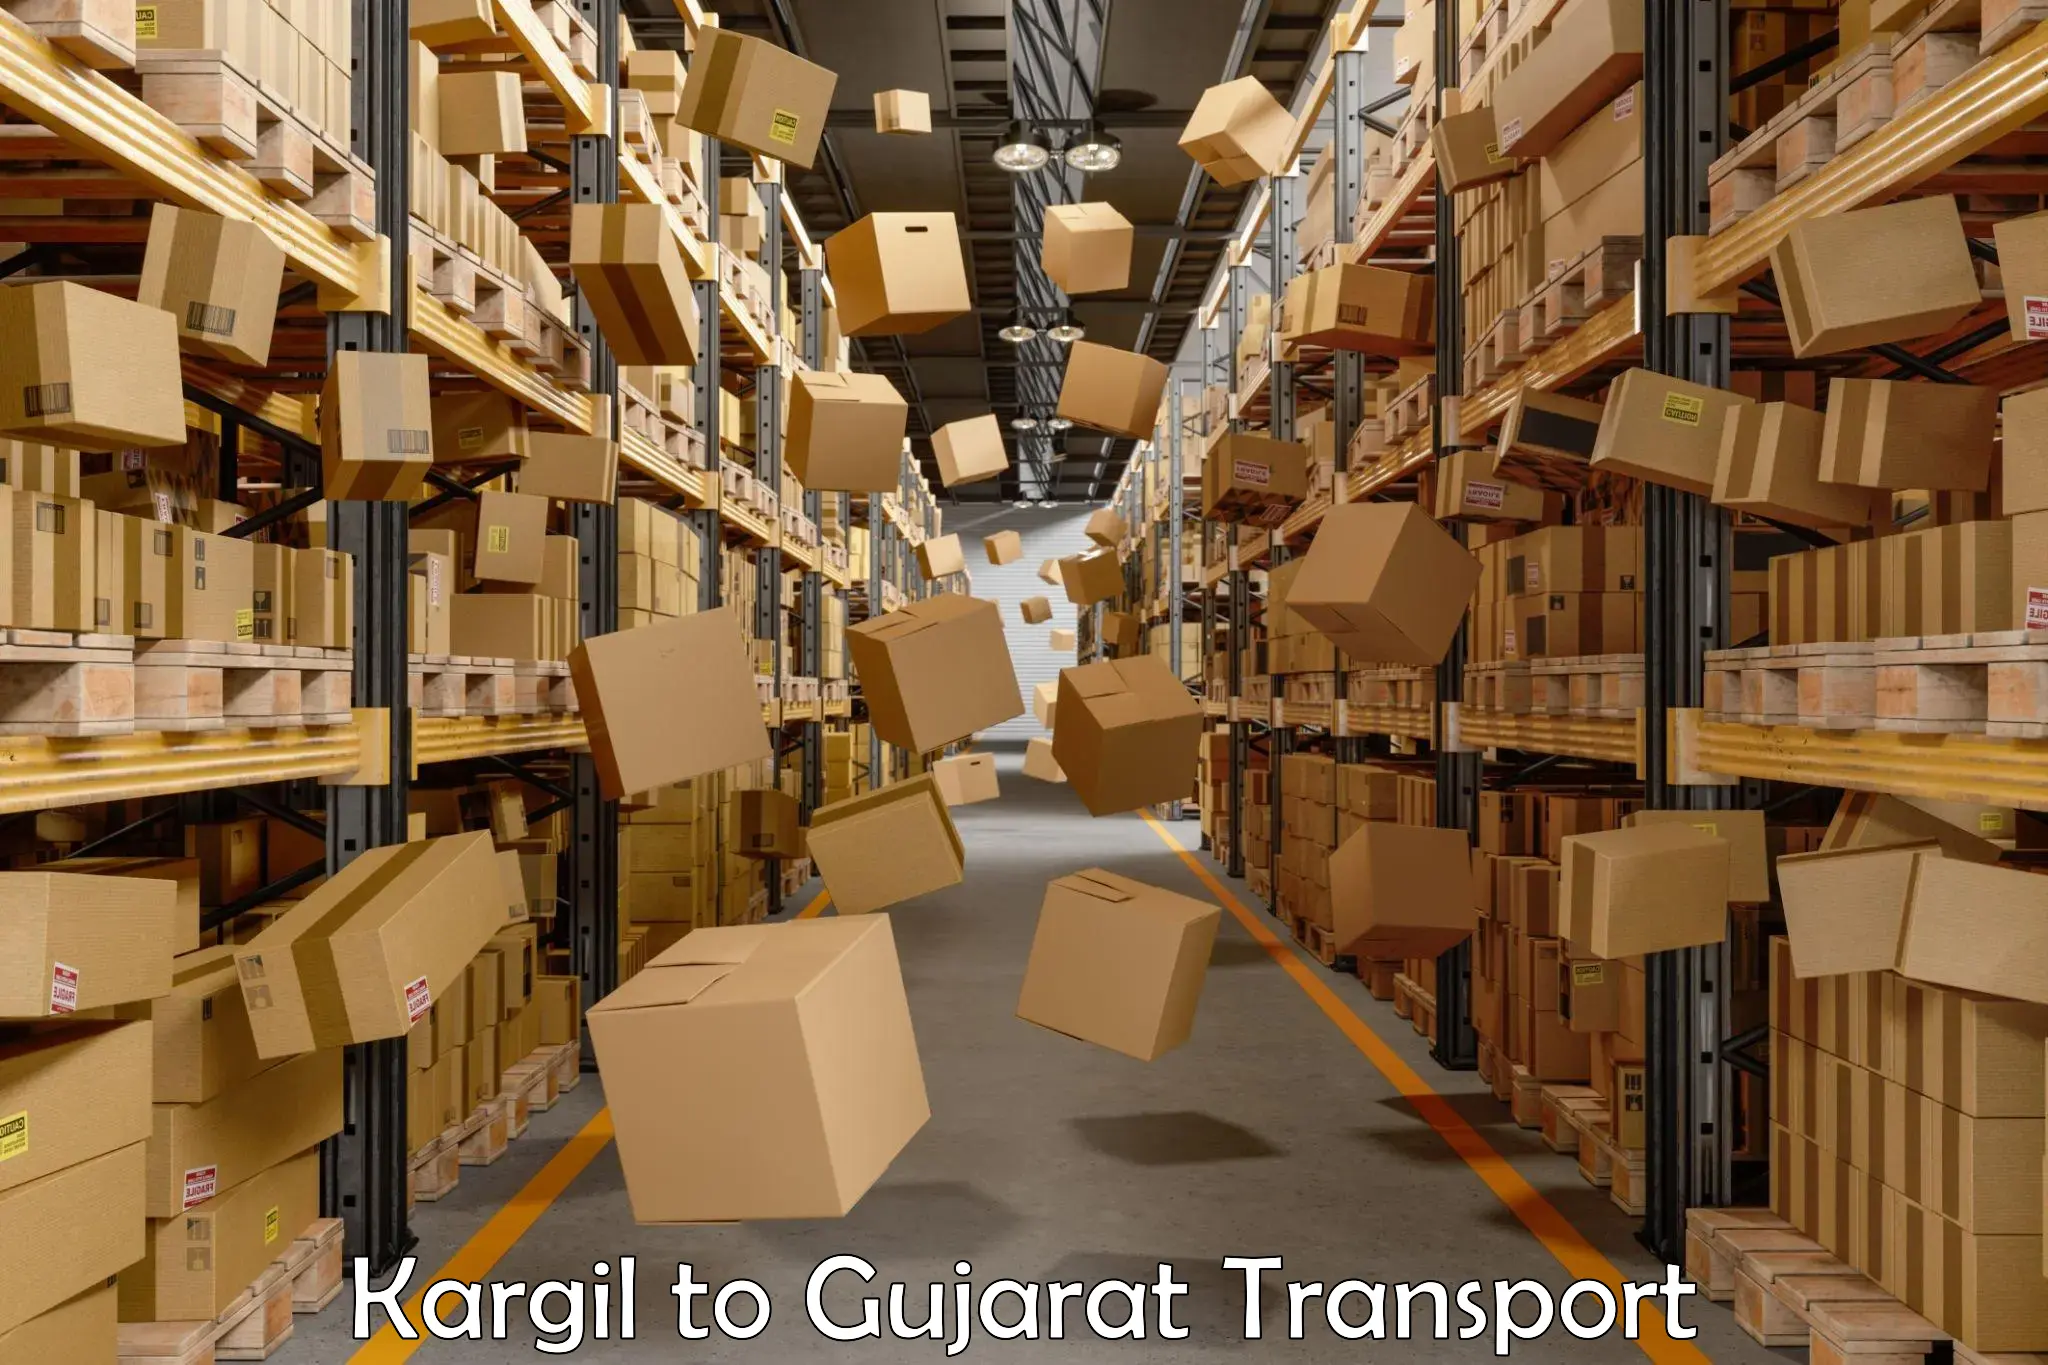 Daily transport service Kargil to Keshod